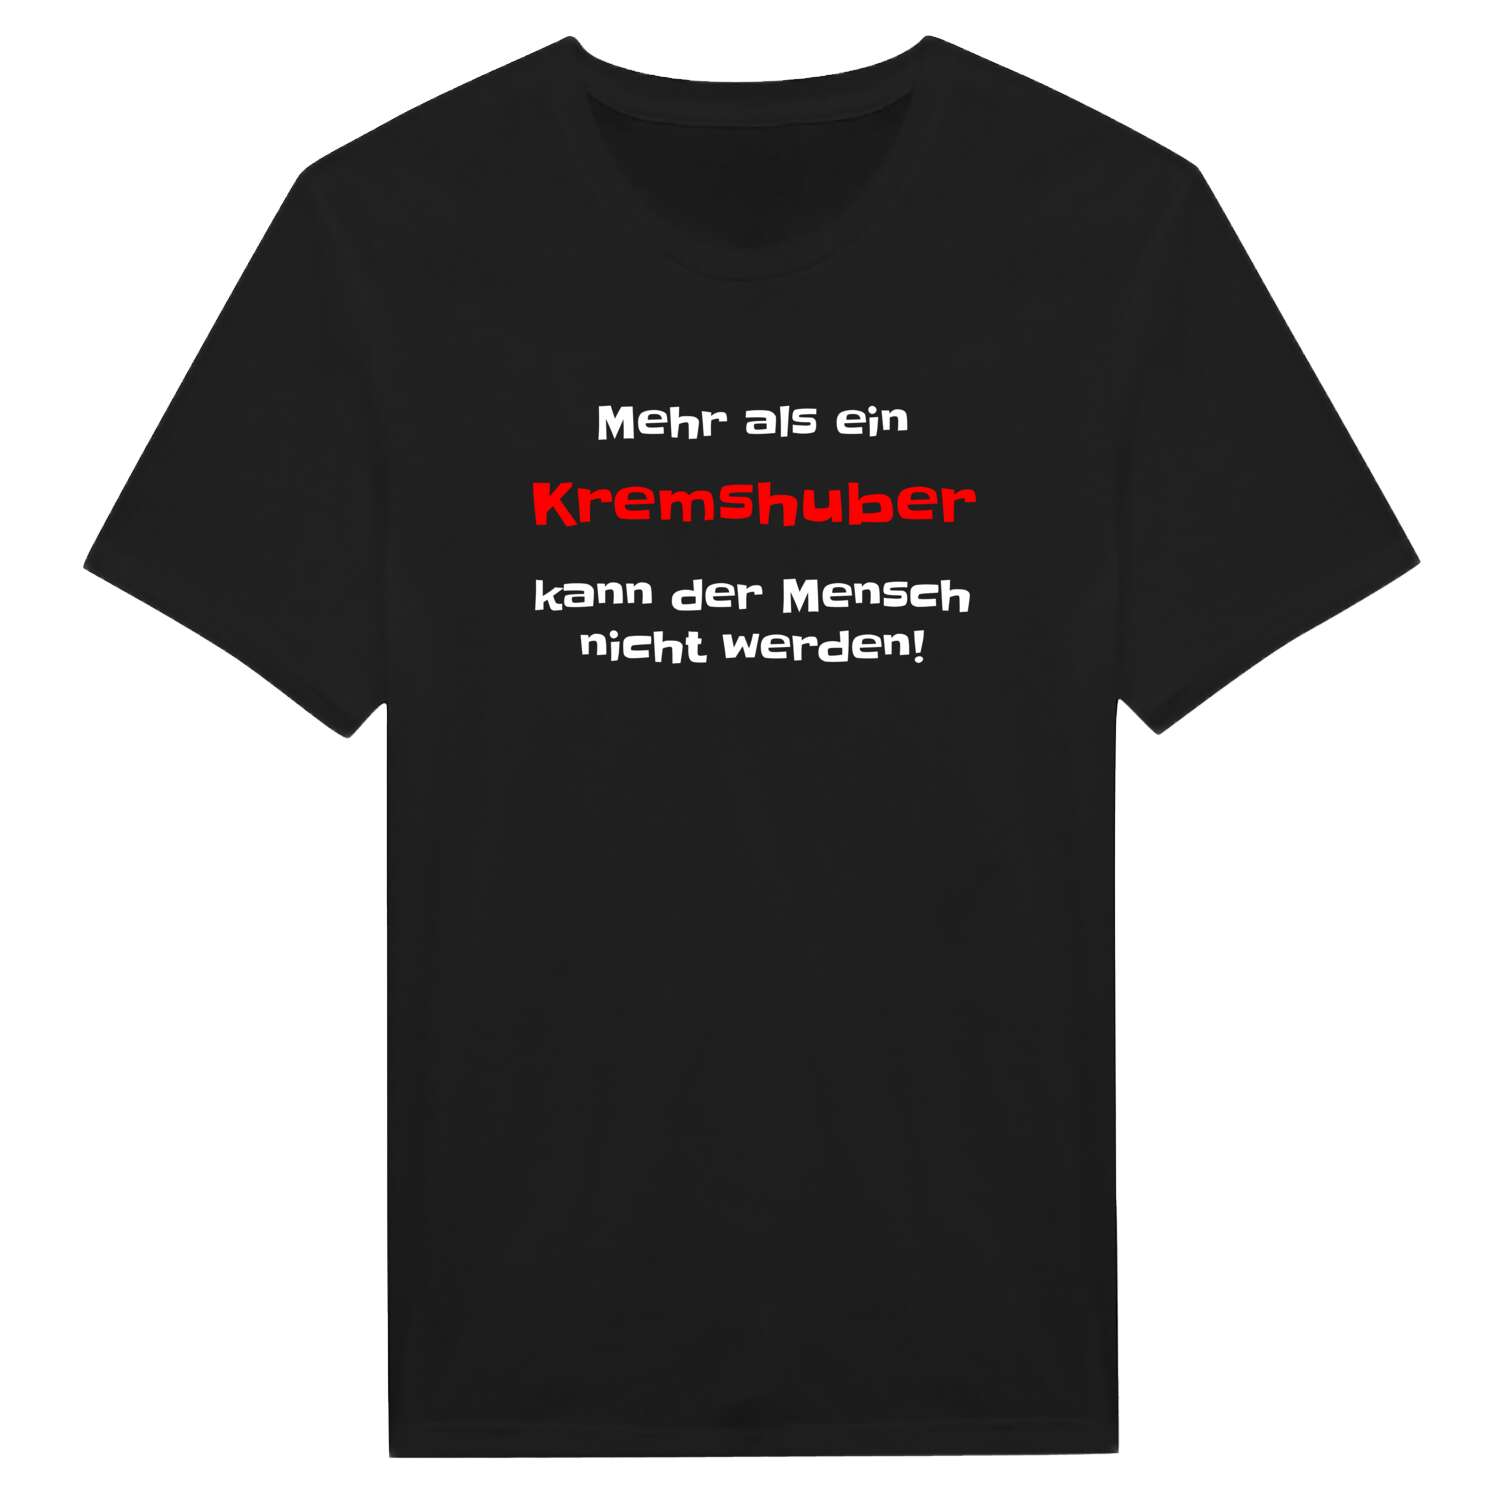 Kremshub T-Shirt »Mehr als ein«